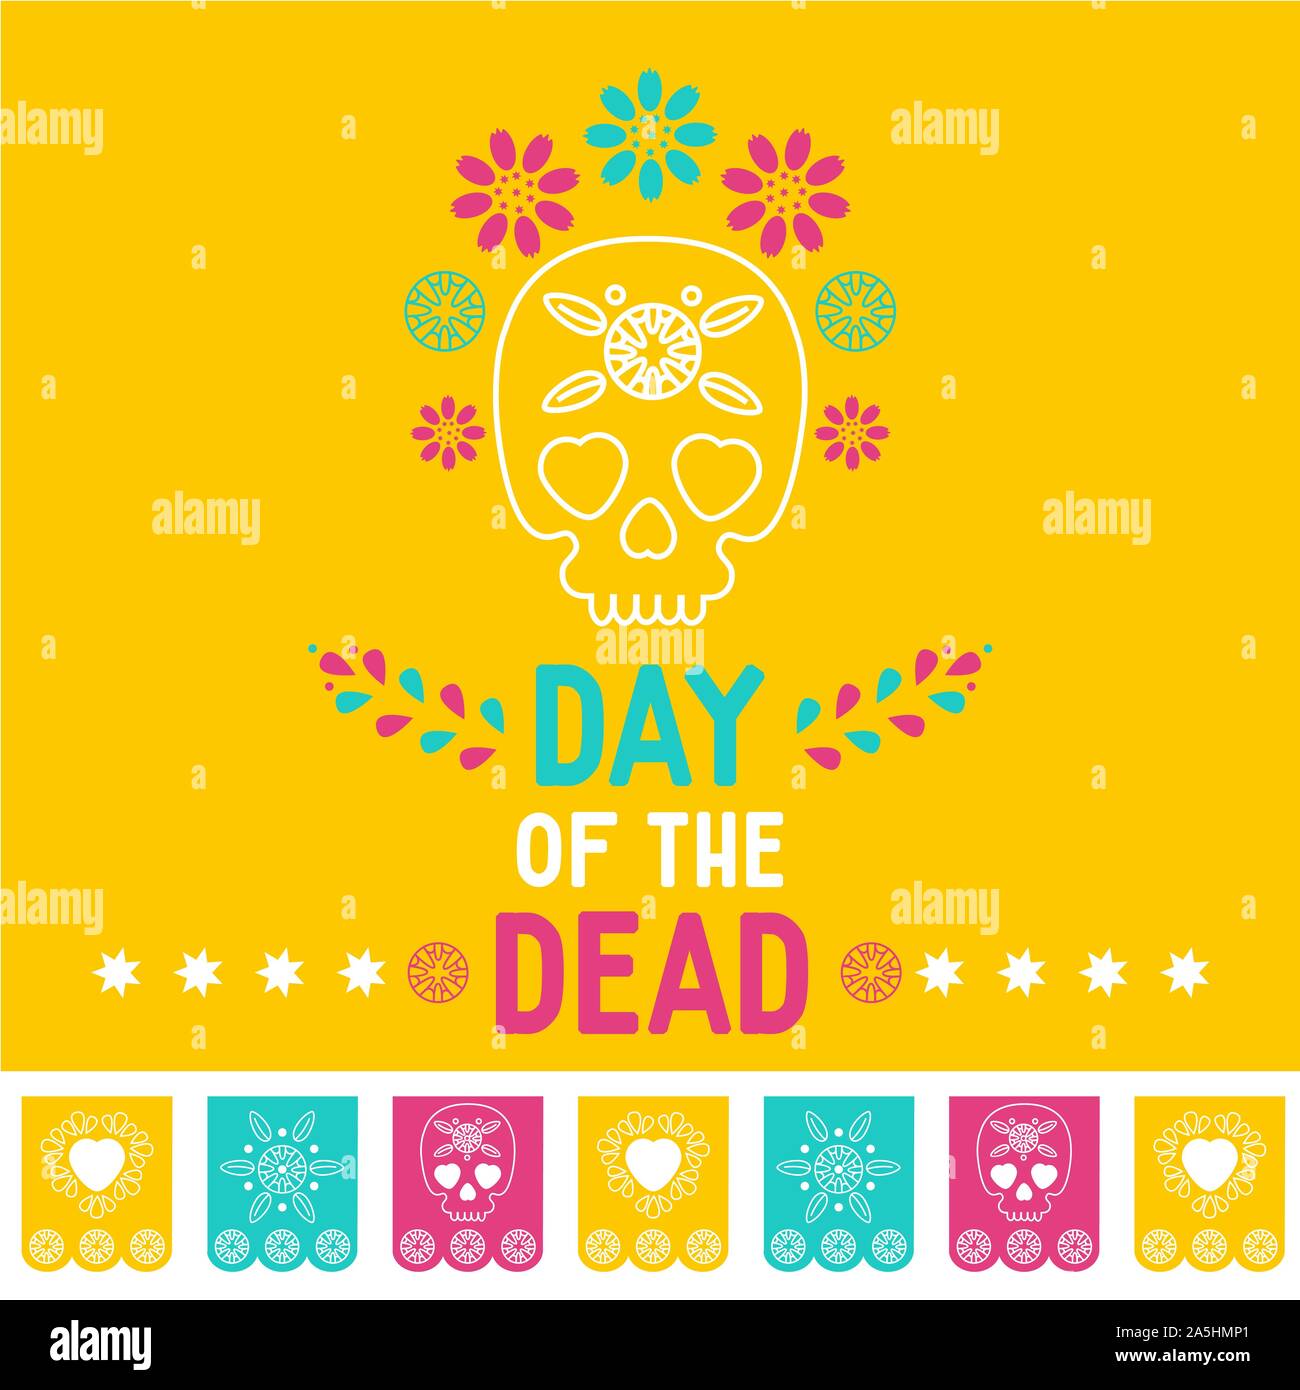 Tag der Toten, Dia de los Muertos gelben Hintergrund, square Banner, Grußkarte. Vector Illustration mit Zucker Schädel oder Calavera, Blumen Stock Vektor